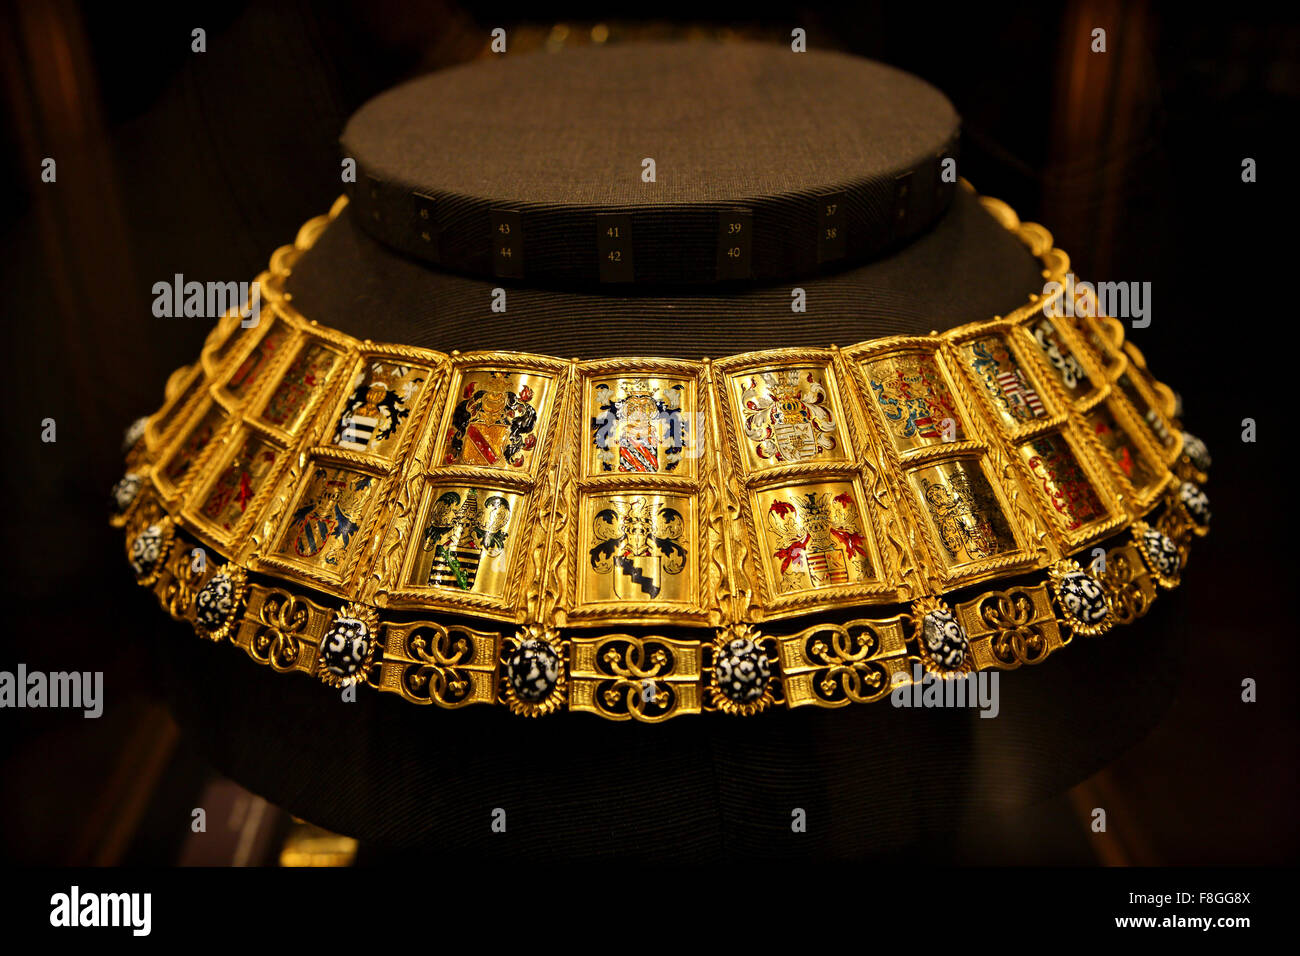 Potence (Chaîne d'armes) de la Kaiserliche Schatzkammer (Imperial) du trésor de la Hofburg, Vienne, Autriche. Banque D'Images